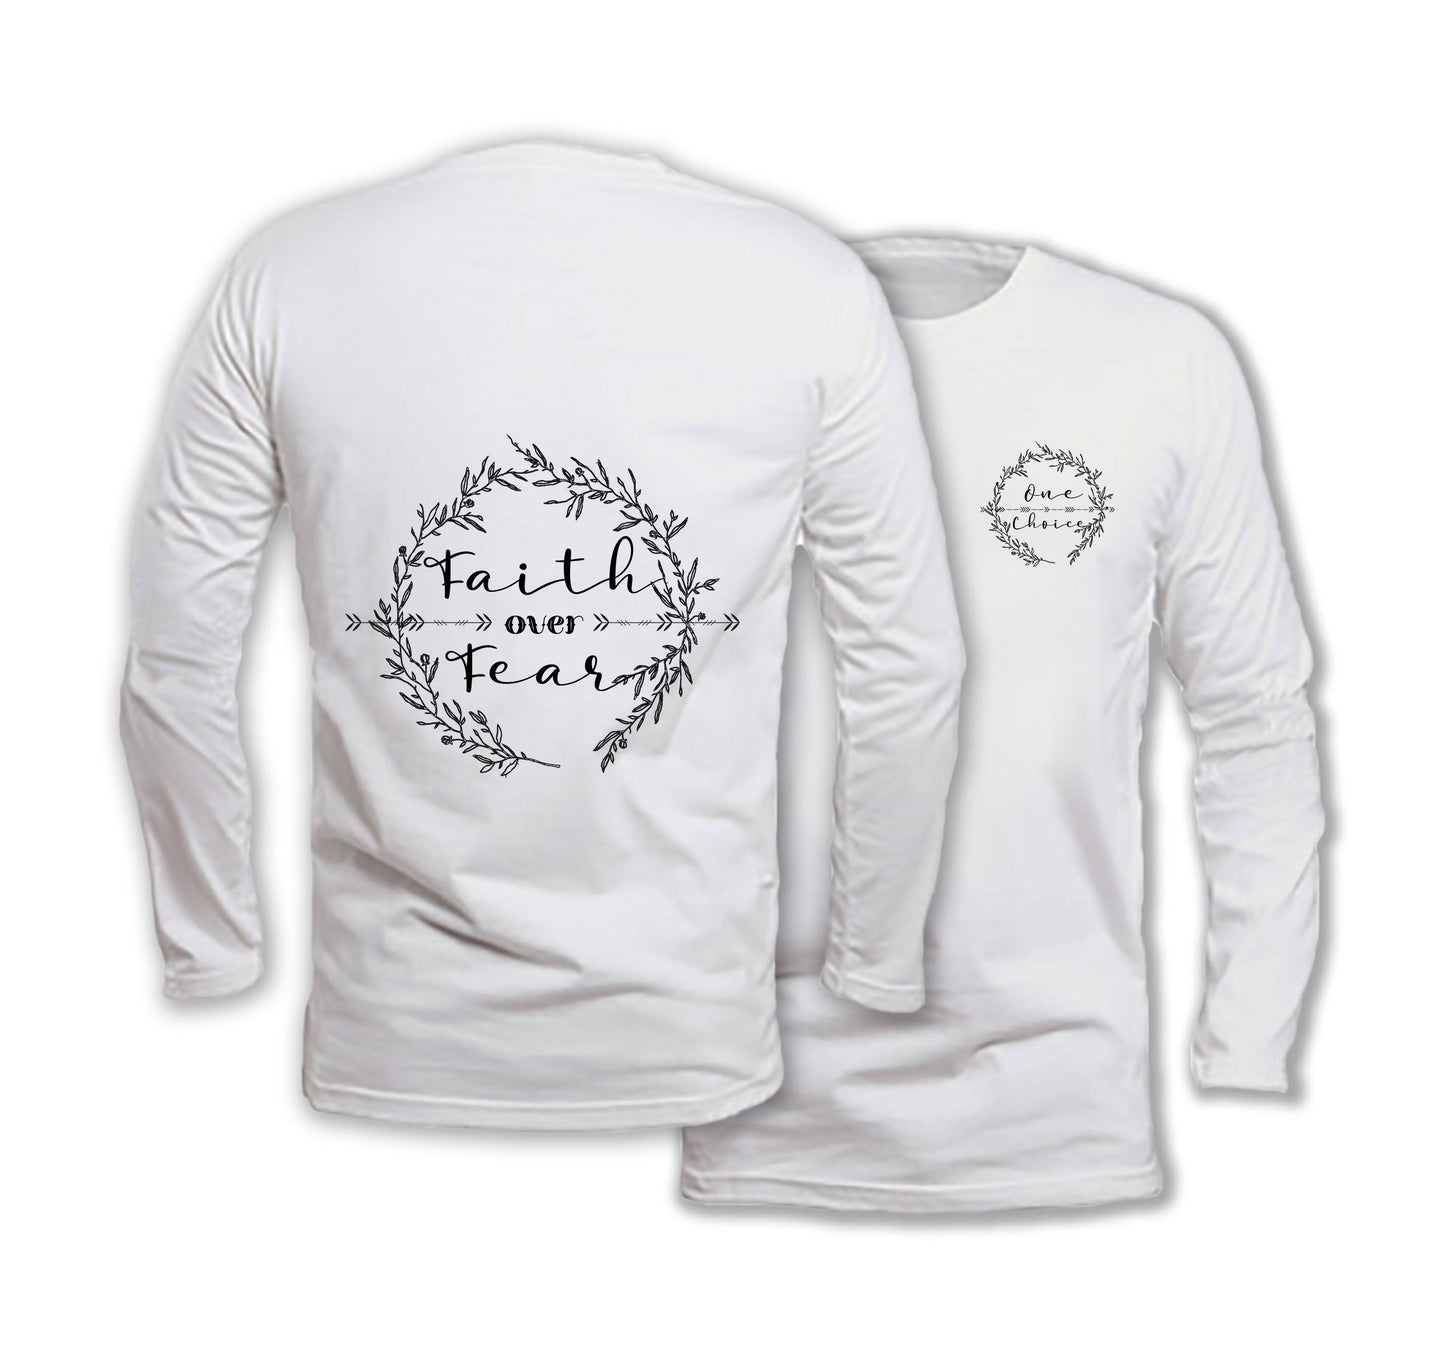 Faith Over Fear - Long Sleeve Organic Cotton T-Shirt - One Choice Apparel